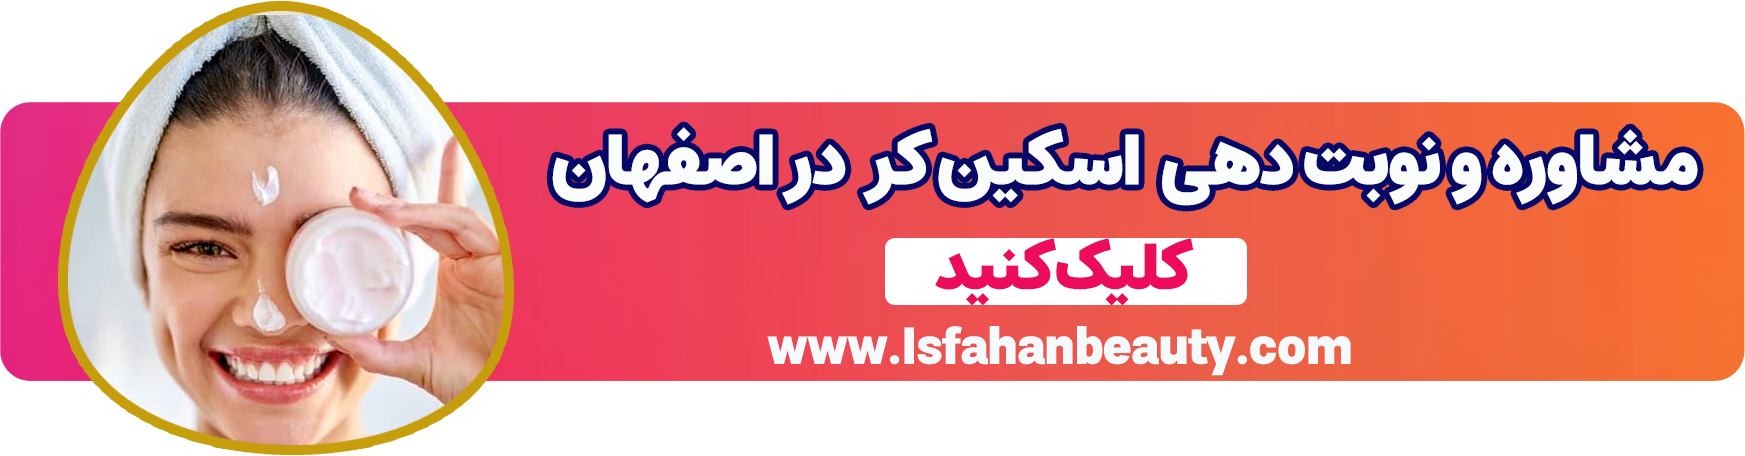 اسکین کر | اصفهان بیوتی